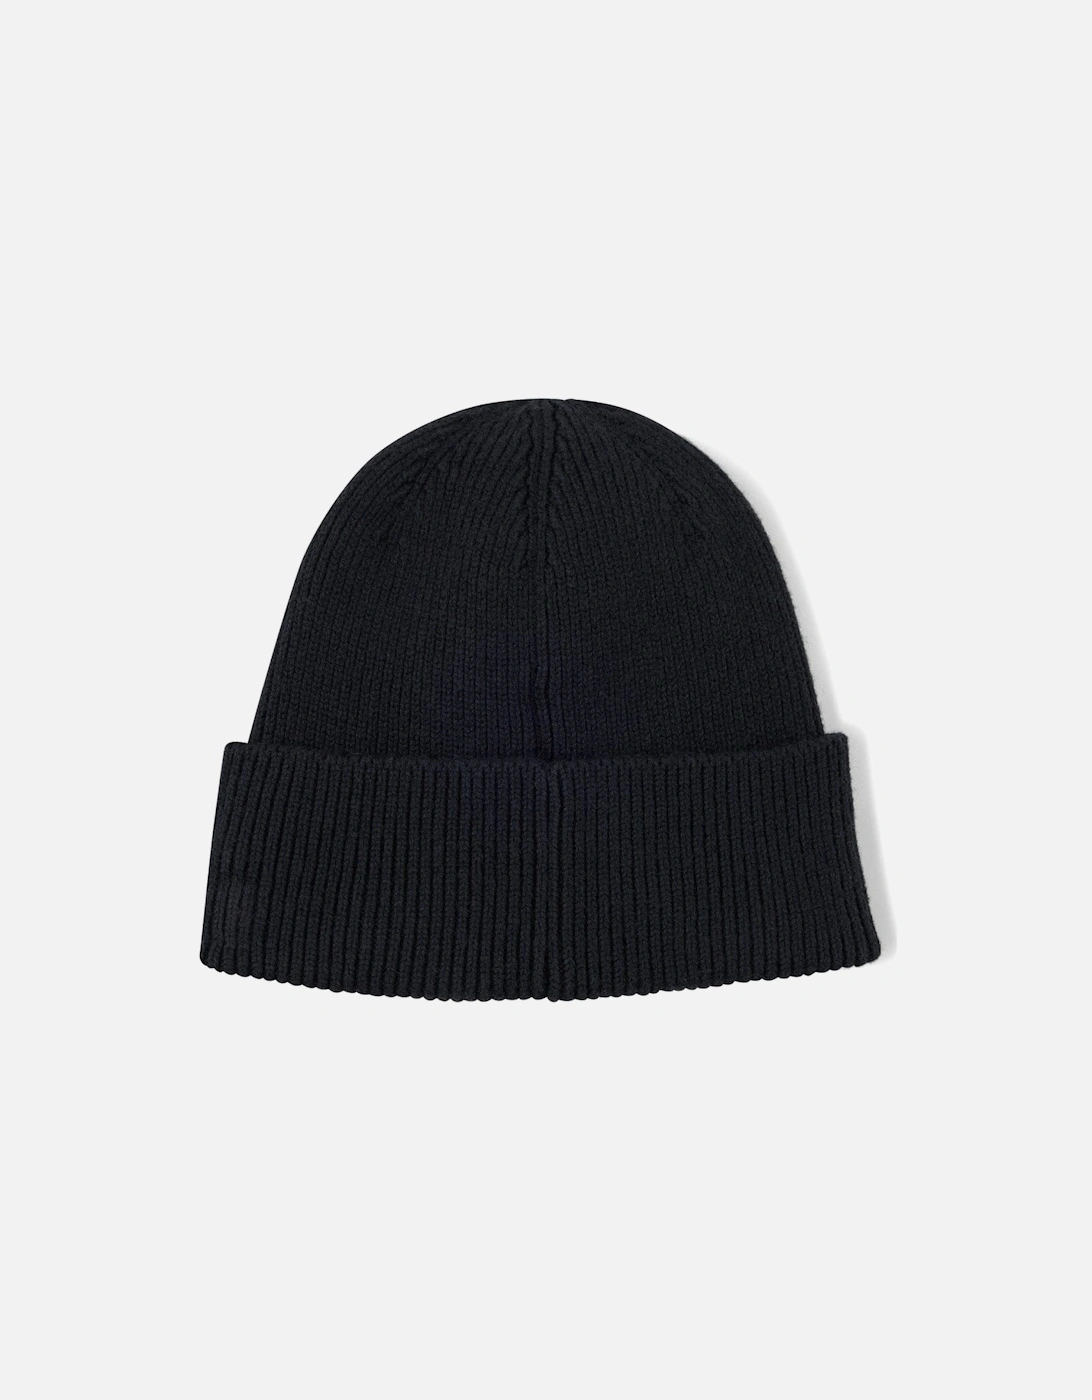 Men's Knitted Black Afox-1 Beanie Hat.